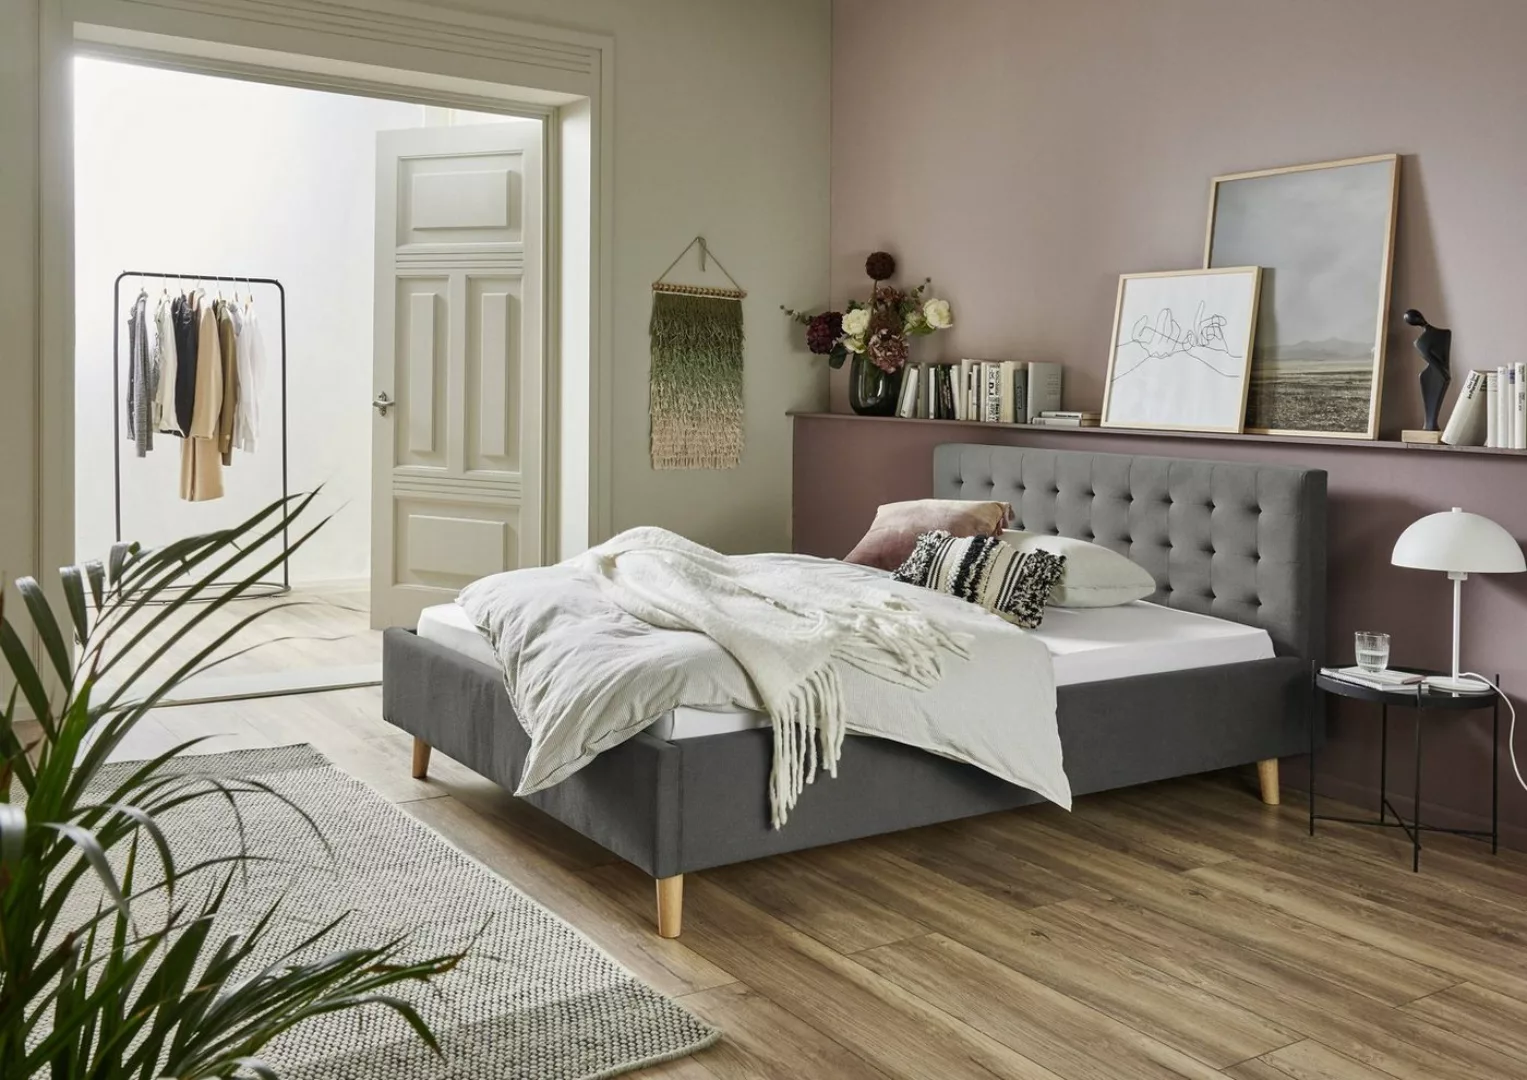 meise.möbel Polsterbett aus Stoff in grau (LxB: 200x140 cm) günstig online kaufen